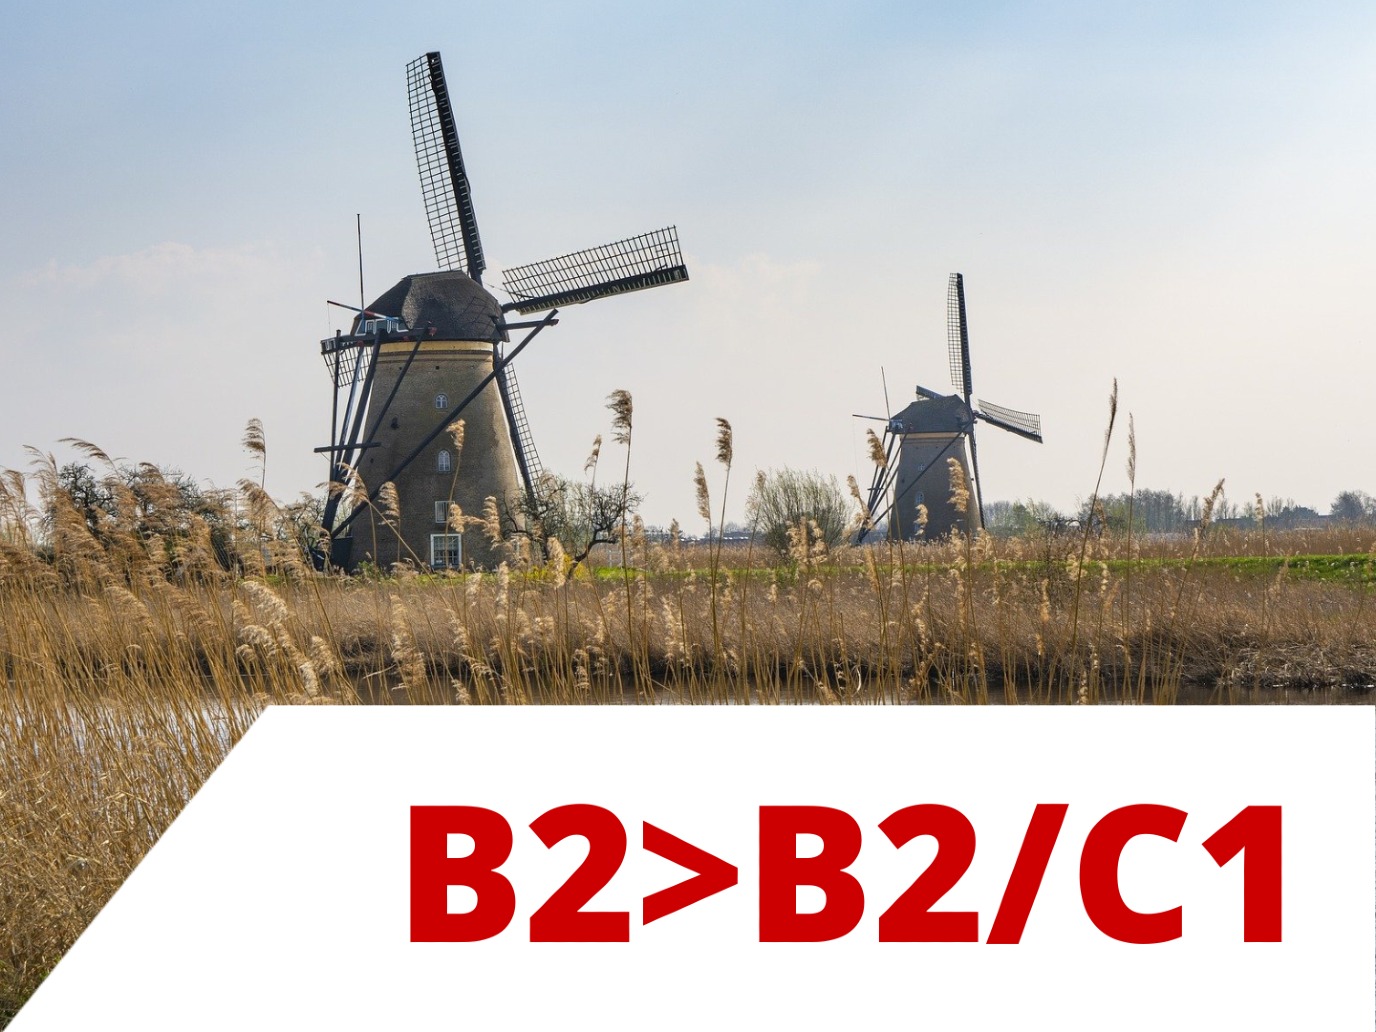 Nederlands B2>B2/C1